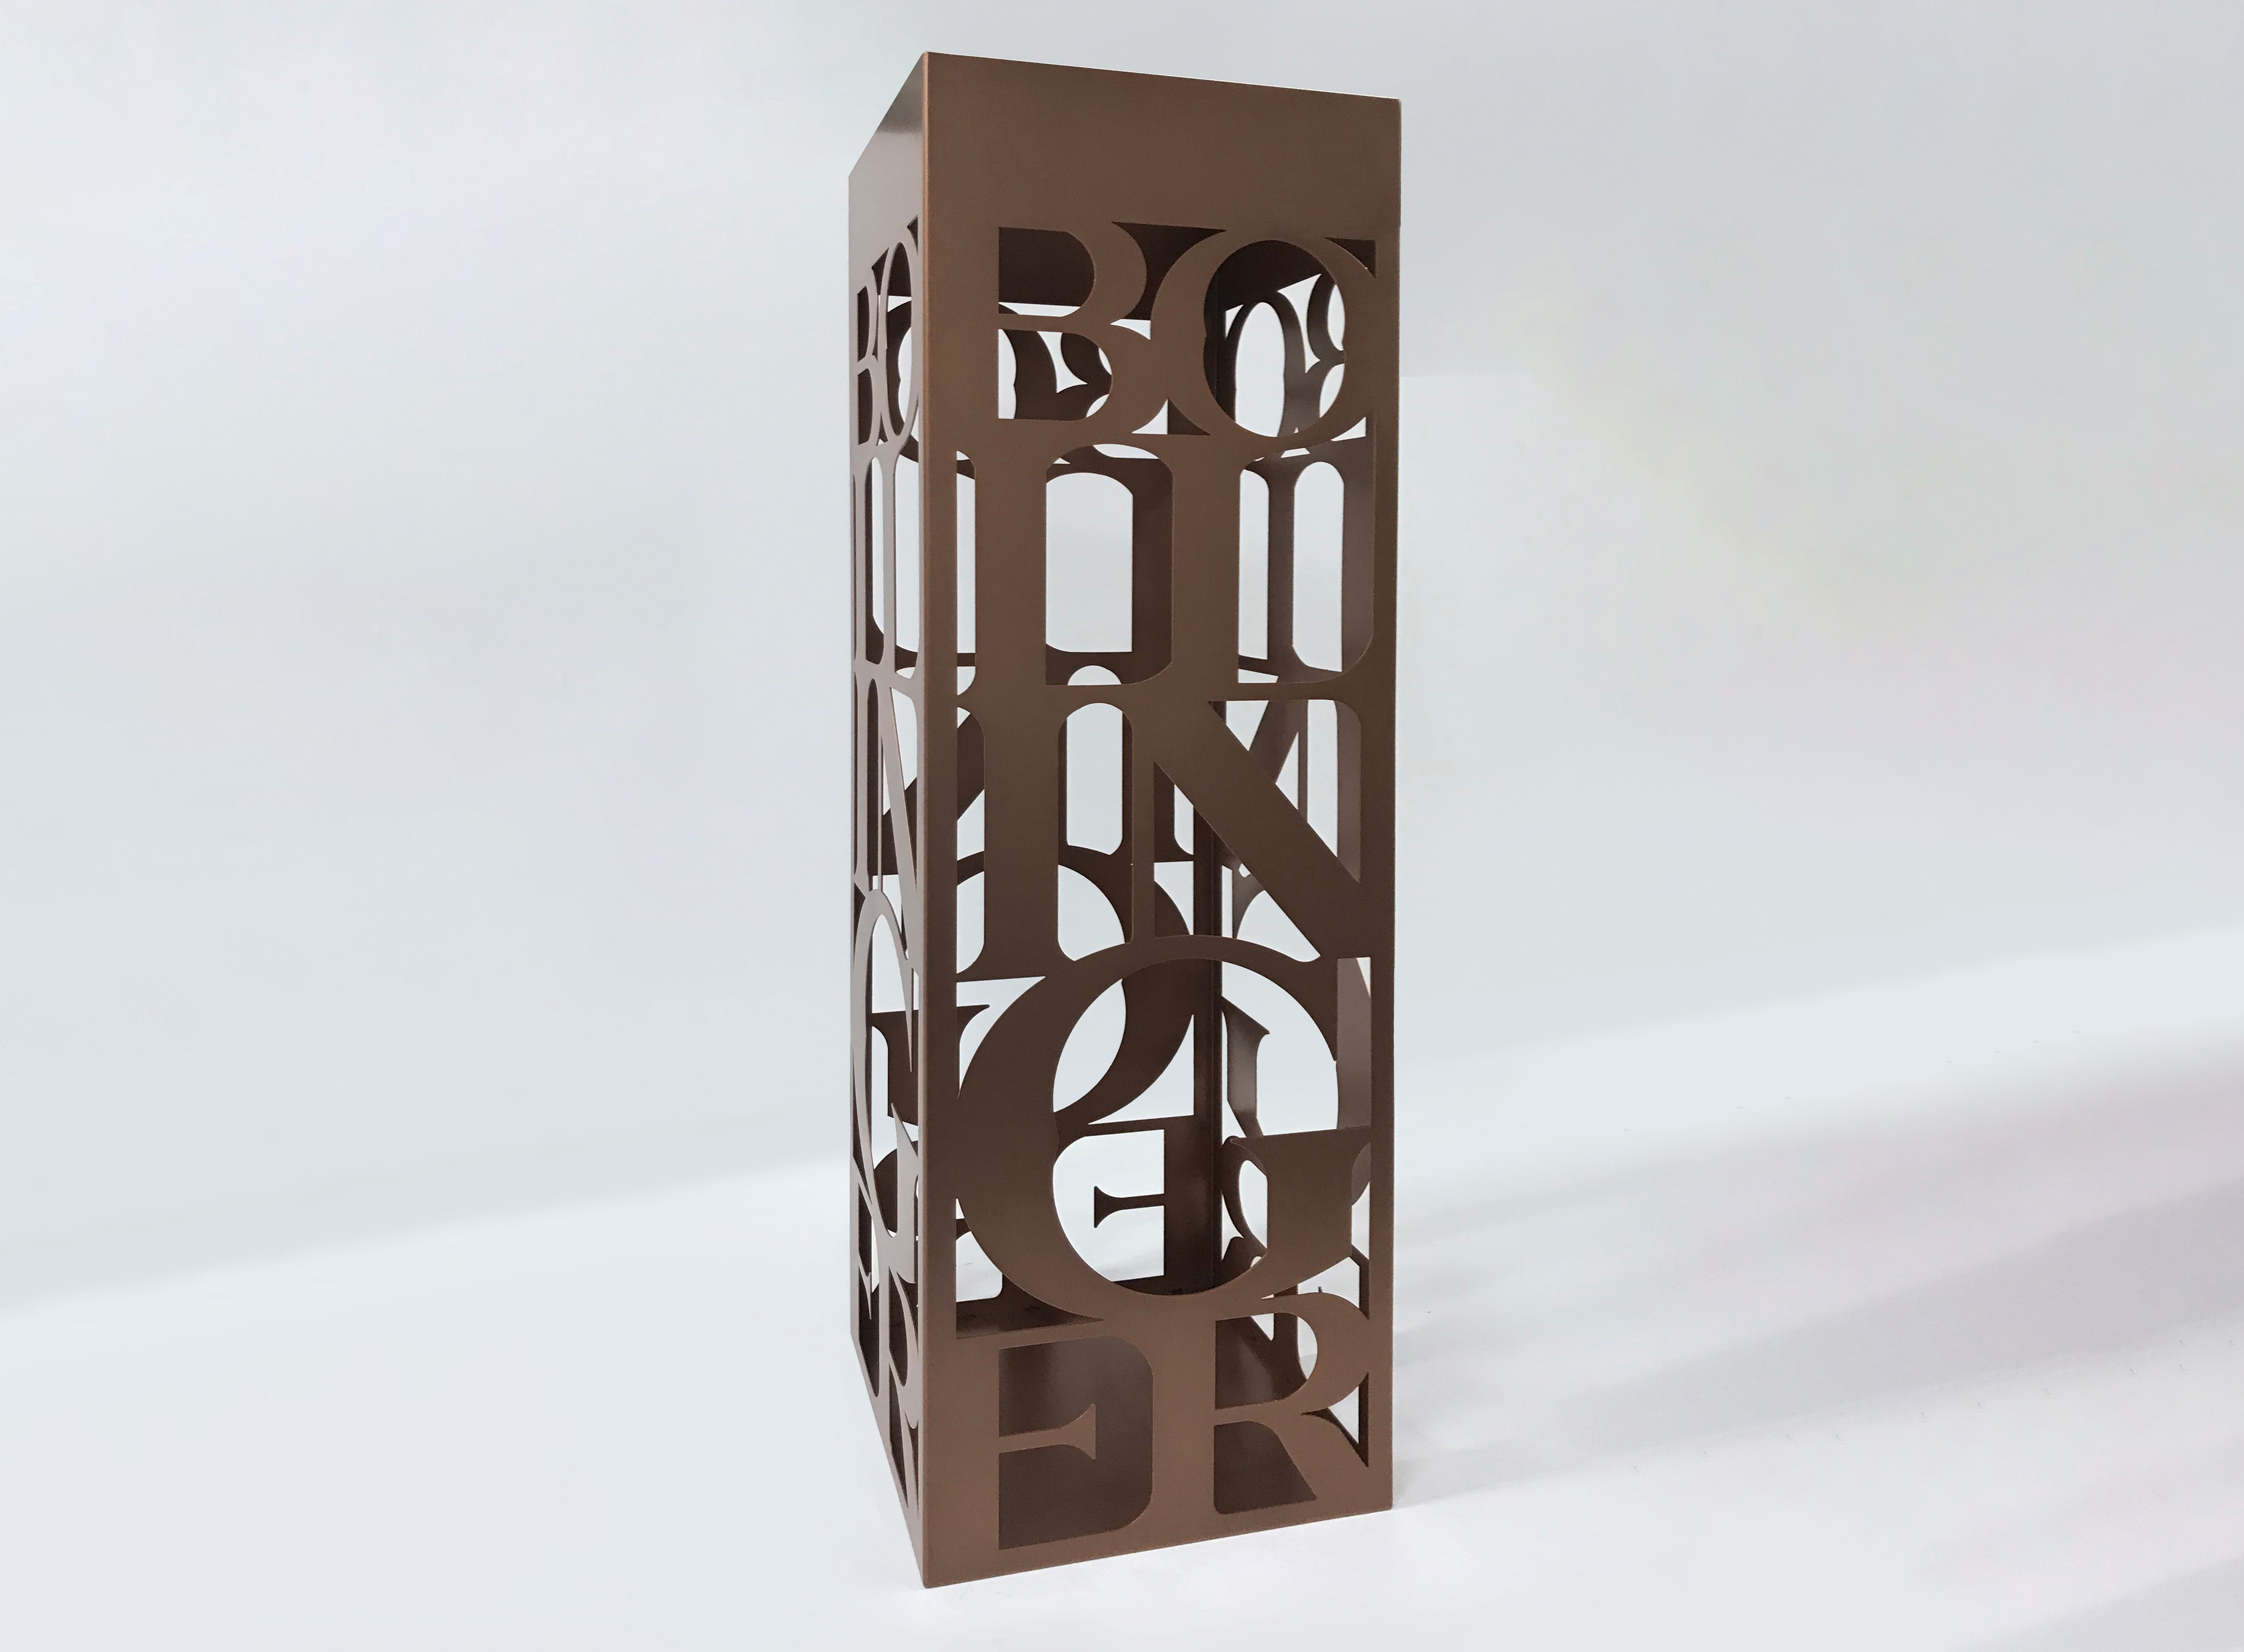 Bollinger podium design with cutaway lattice work